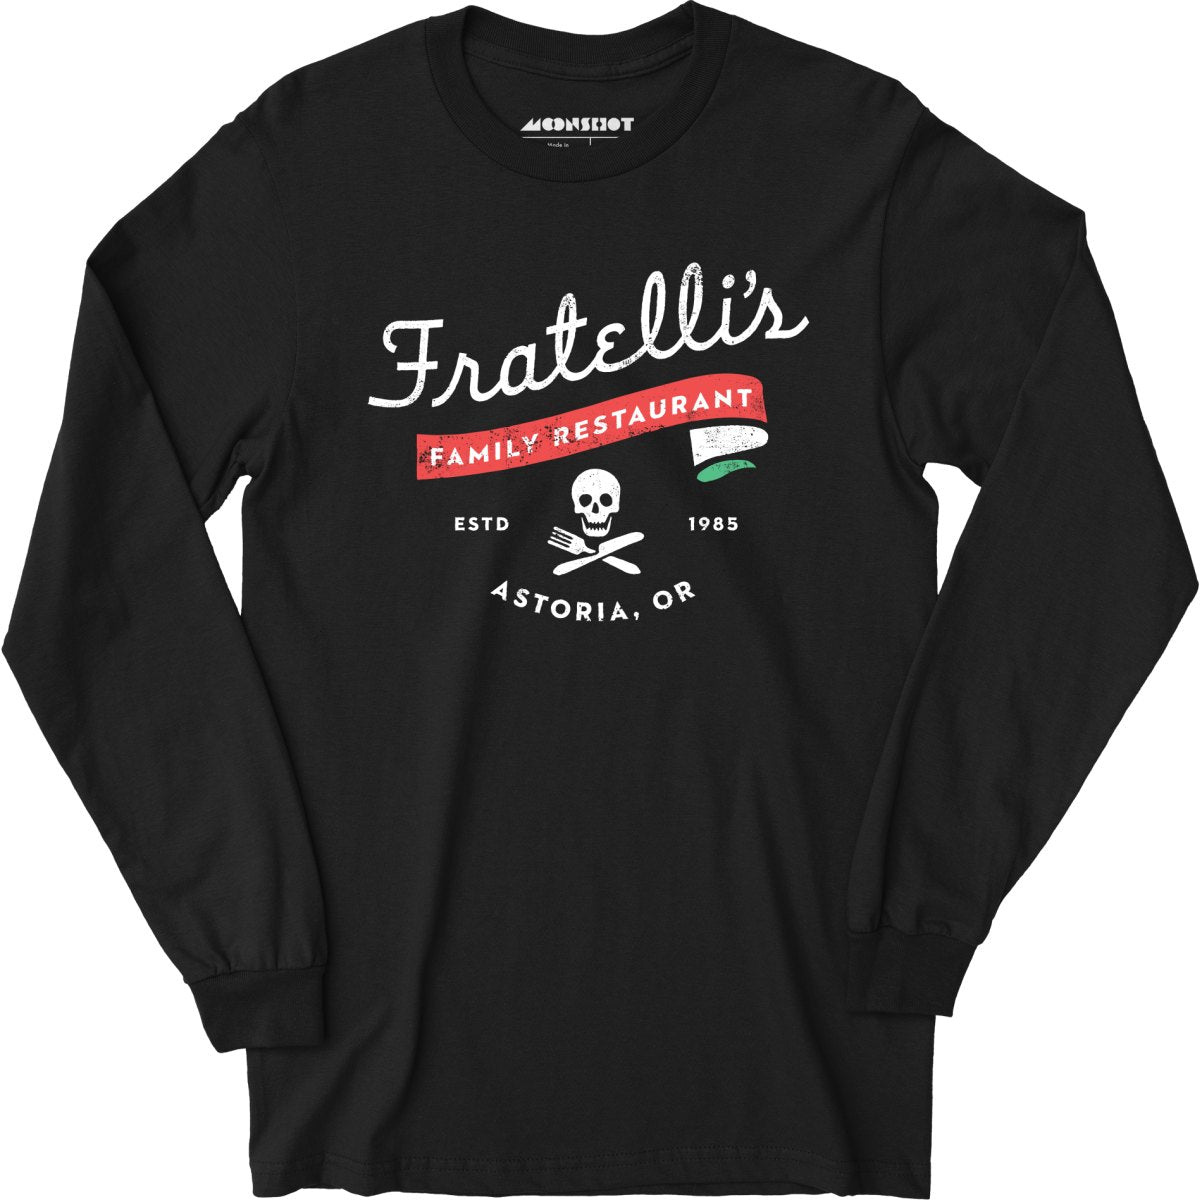 Fratelli's Family Restaurant - Long Sleeve T-Shirt